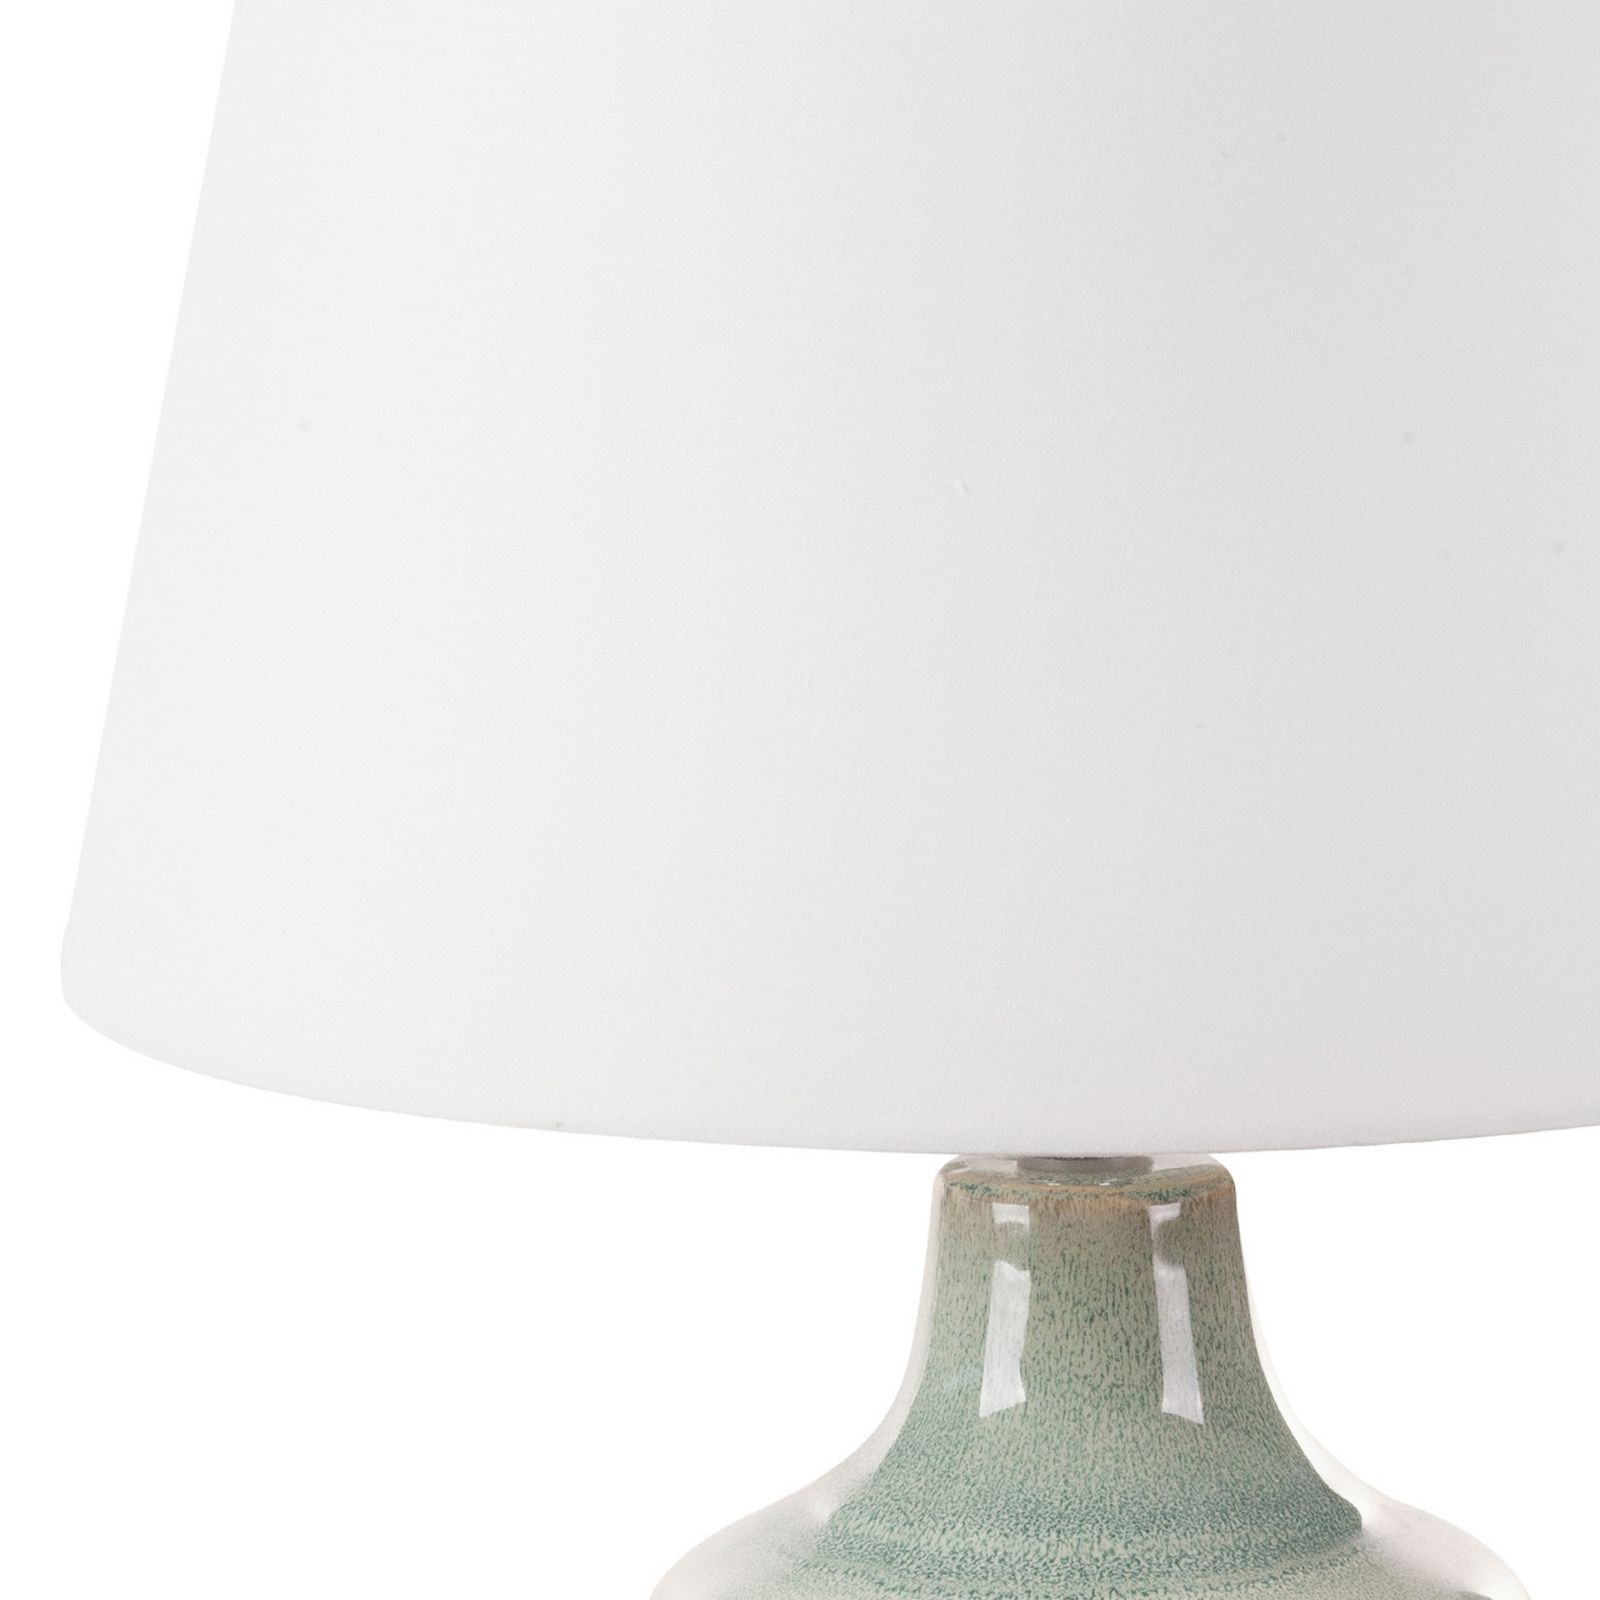 Dekorativní lampa LIANA 01 krémová